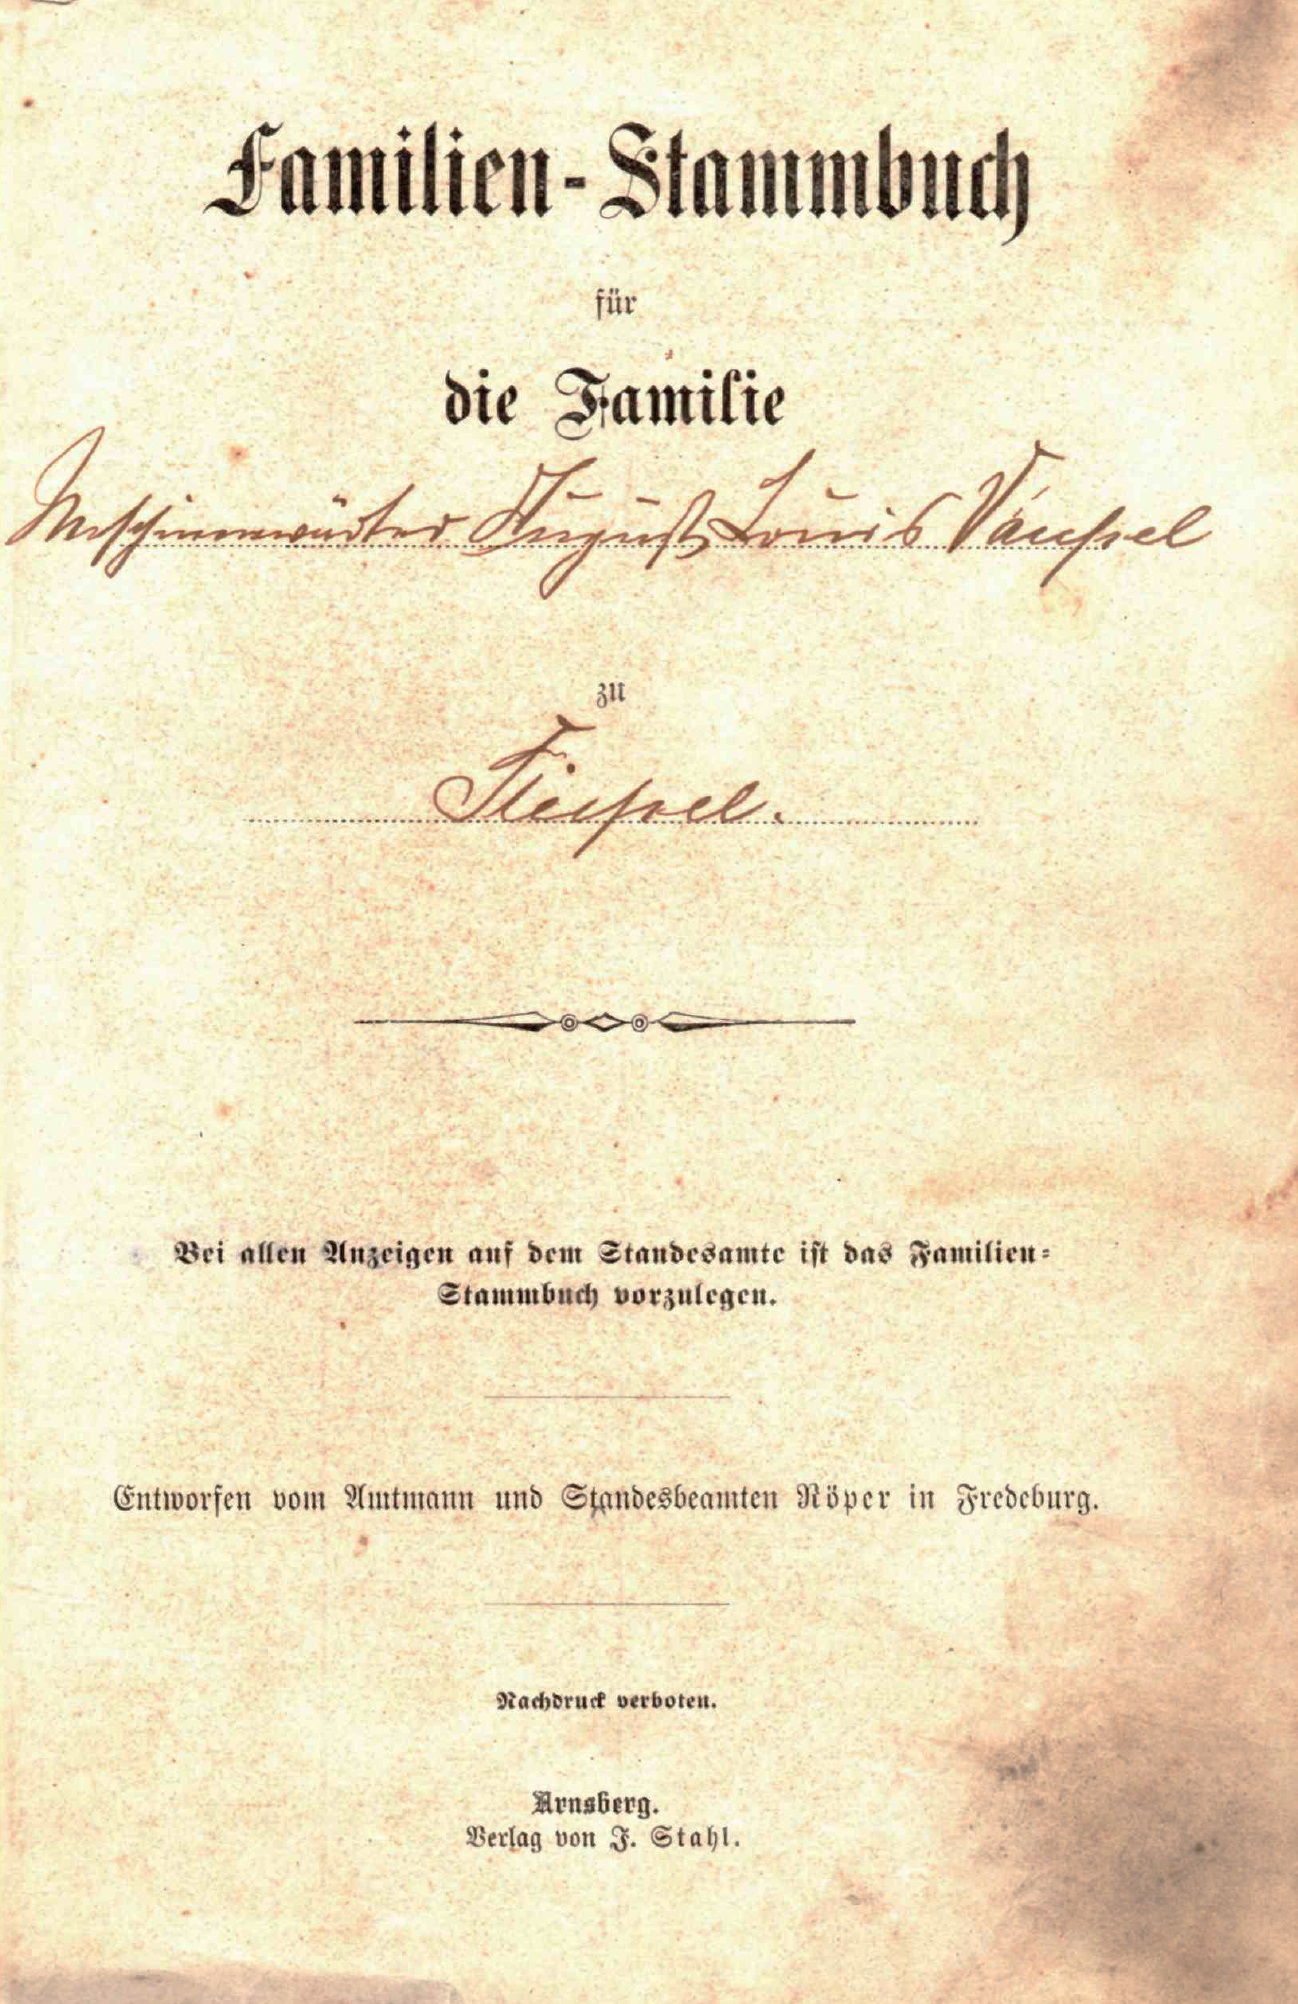 Vaupel, Familien-Stammbuch für die Familie August Louis (Ludwig) Vaupel (1877-1952) zu Stiepel